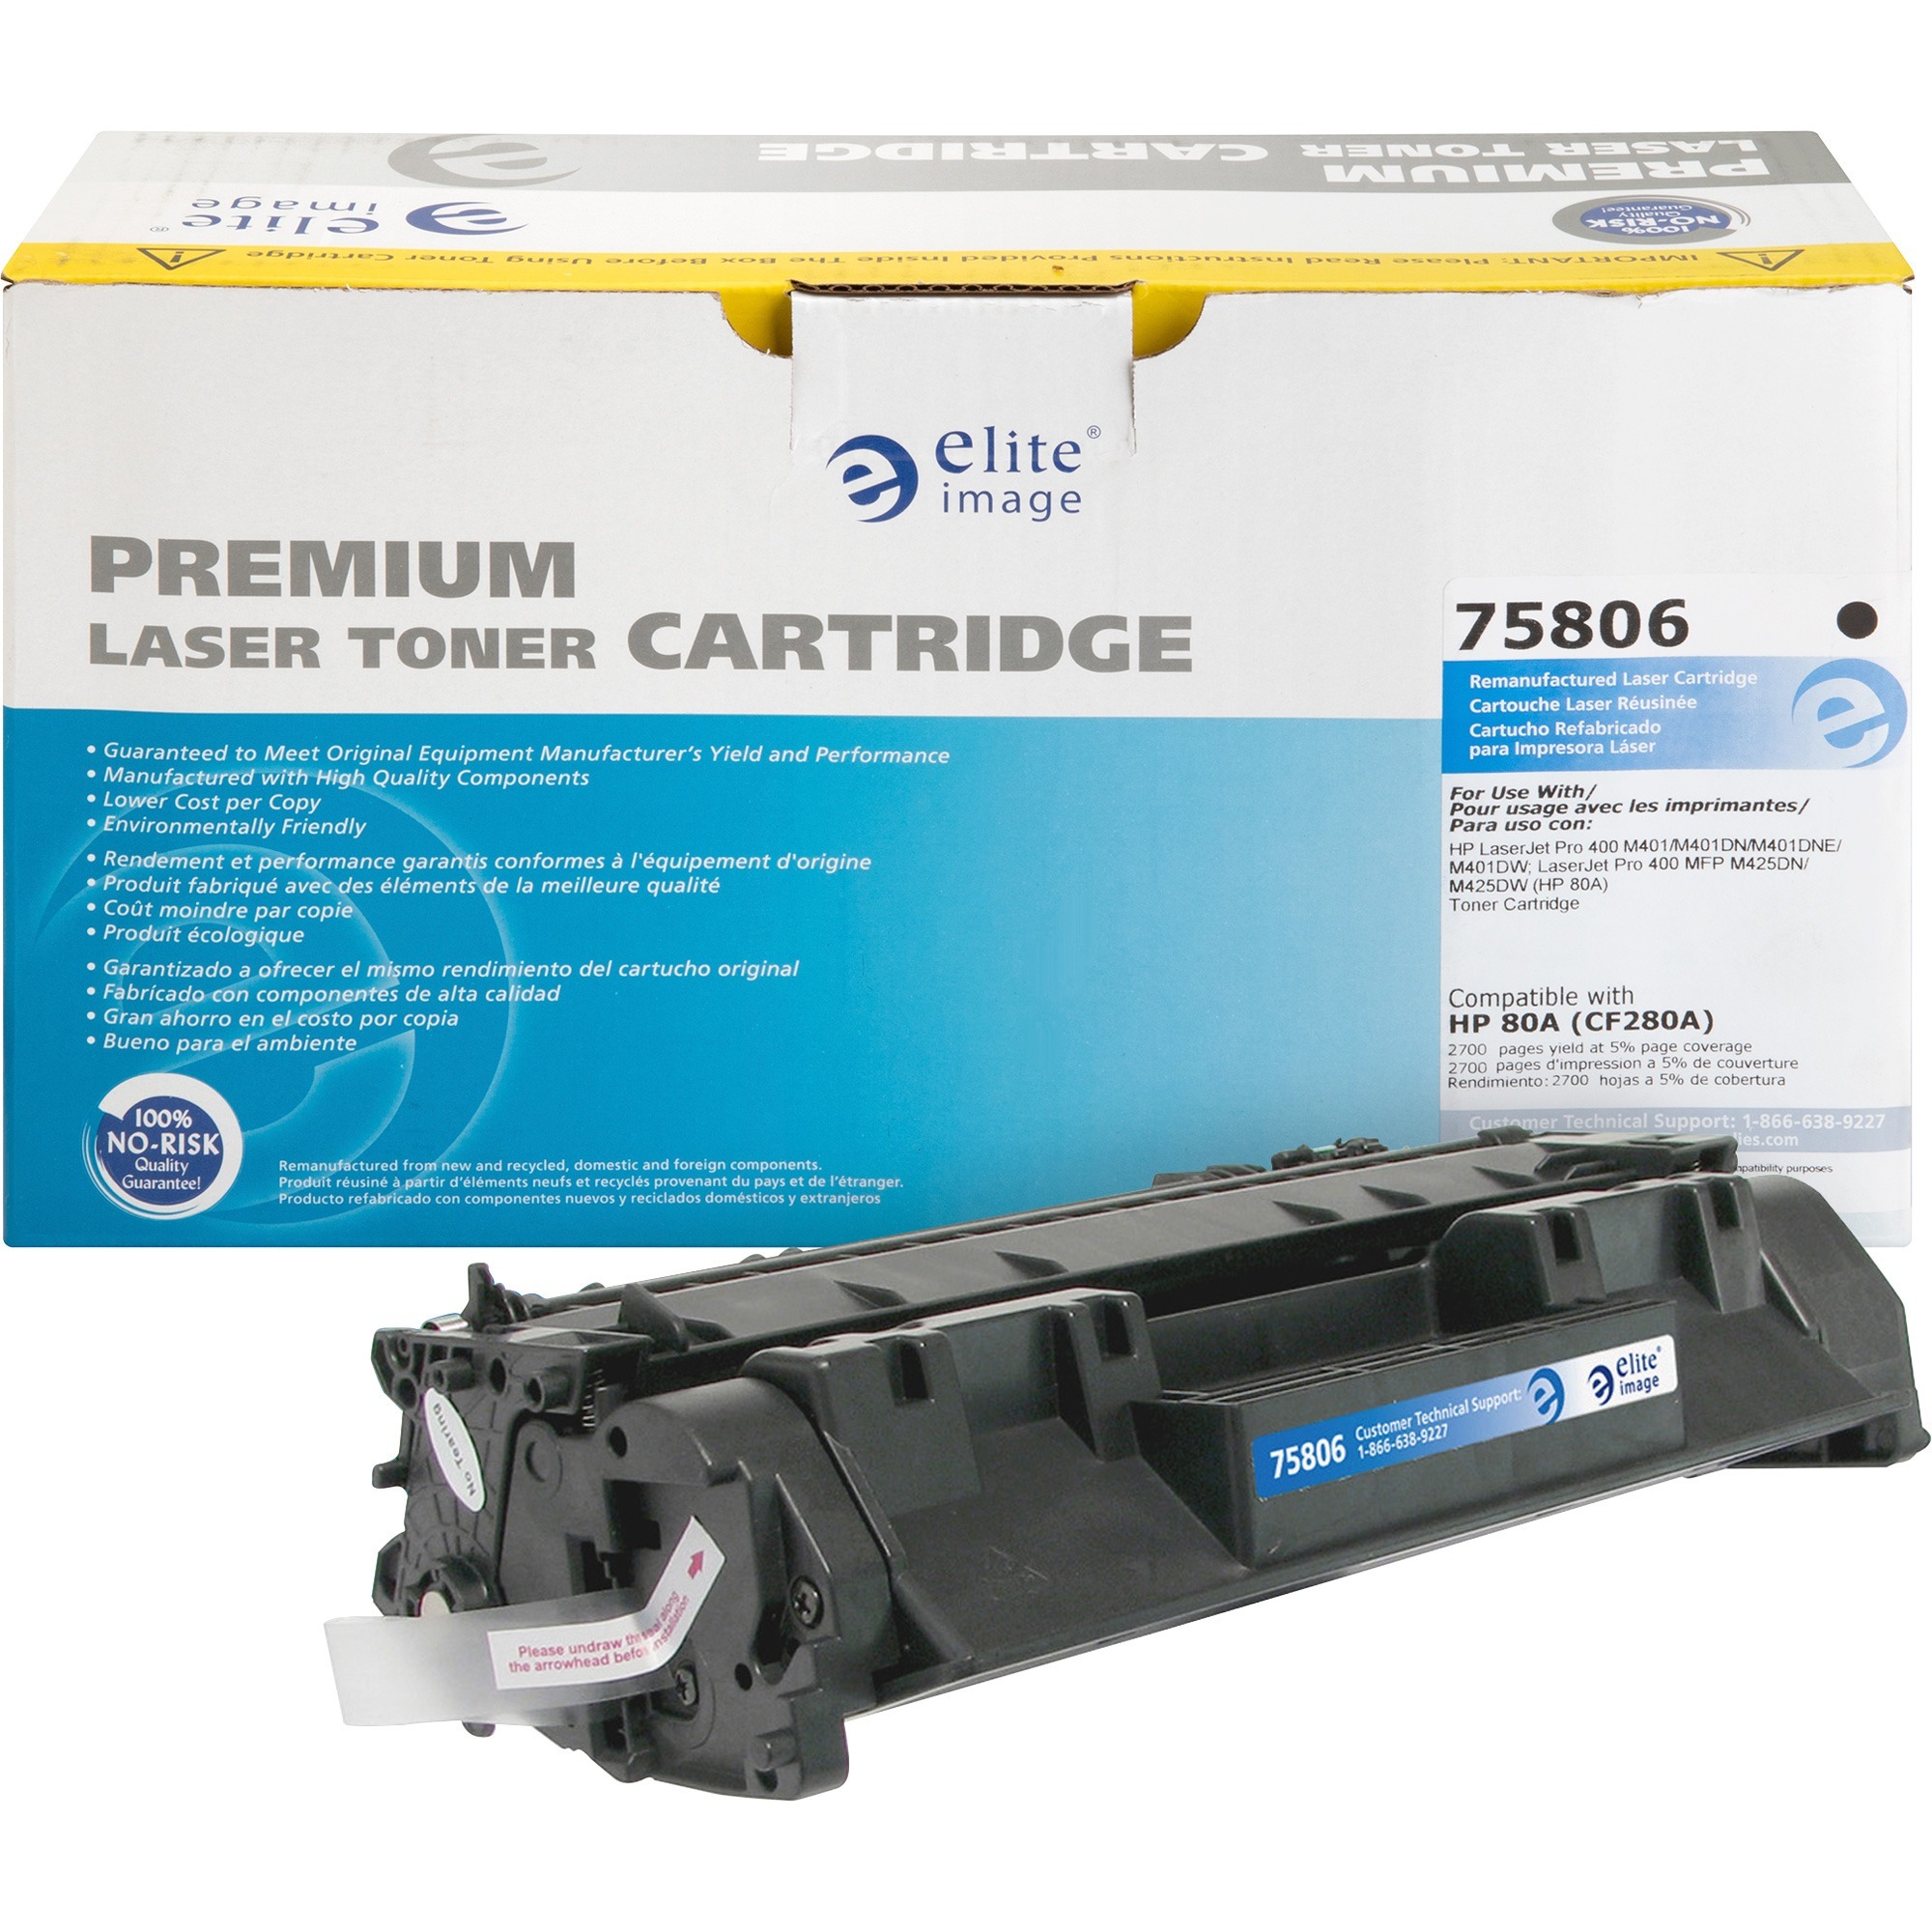 Imprimante laser couleur 2130cn